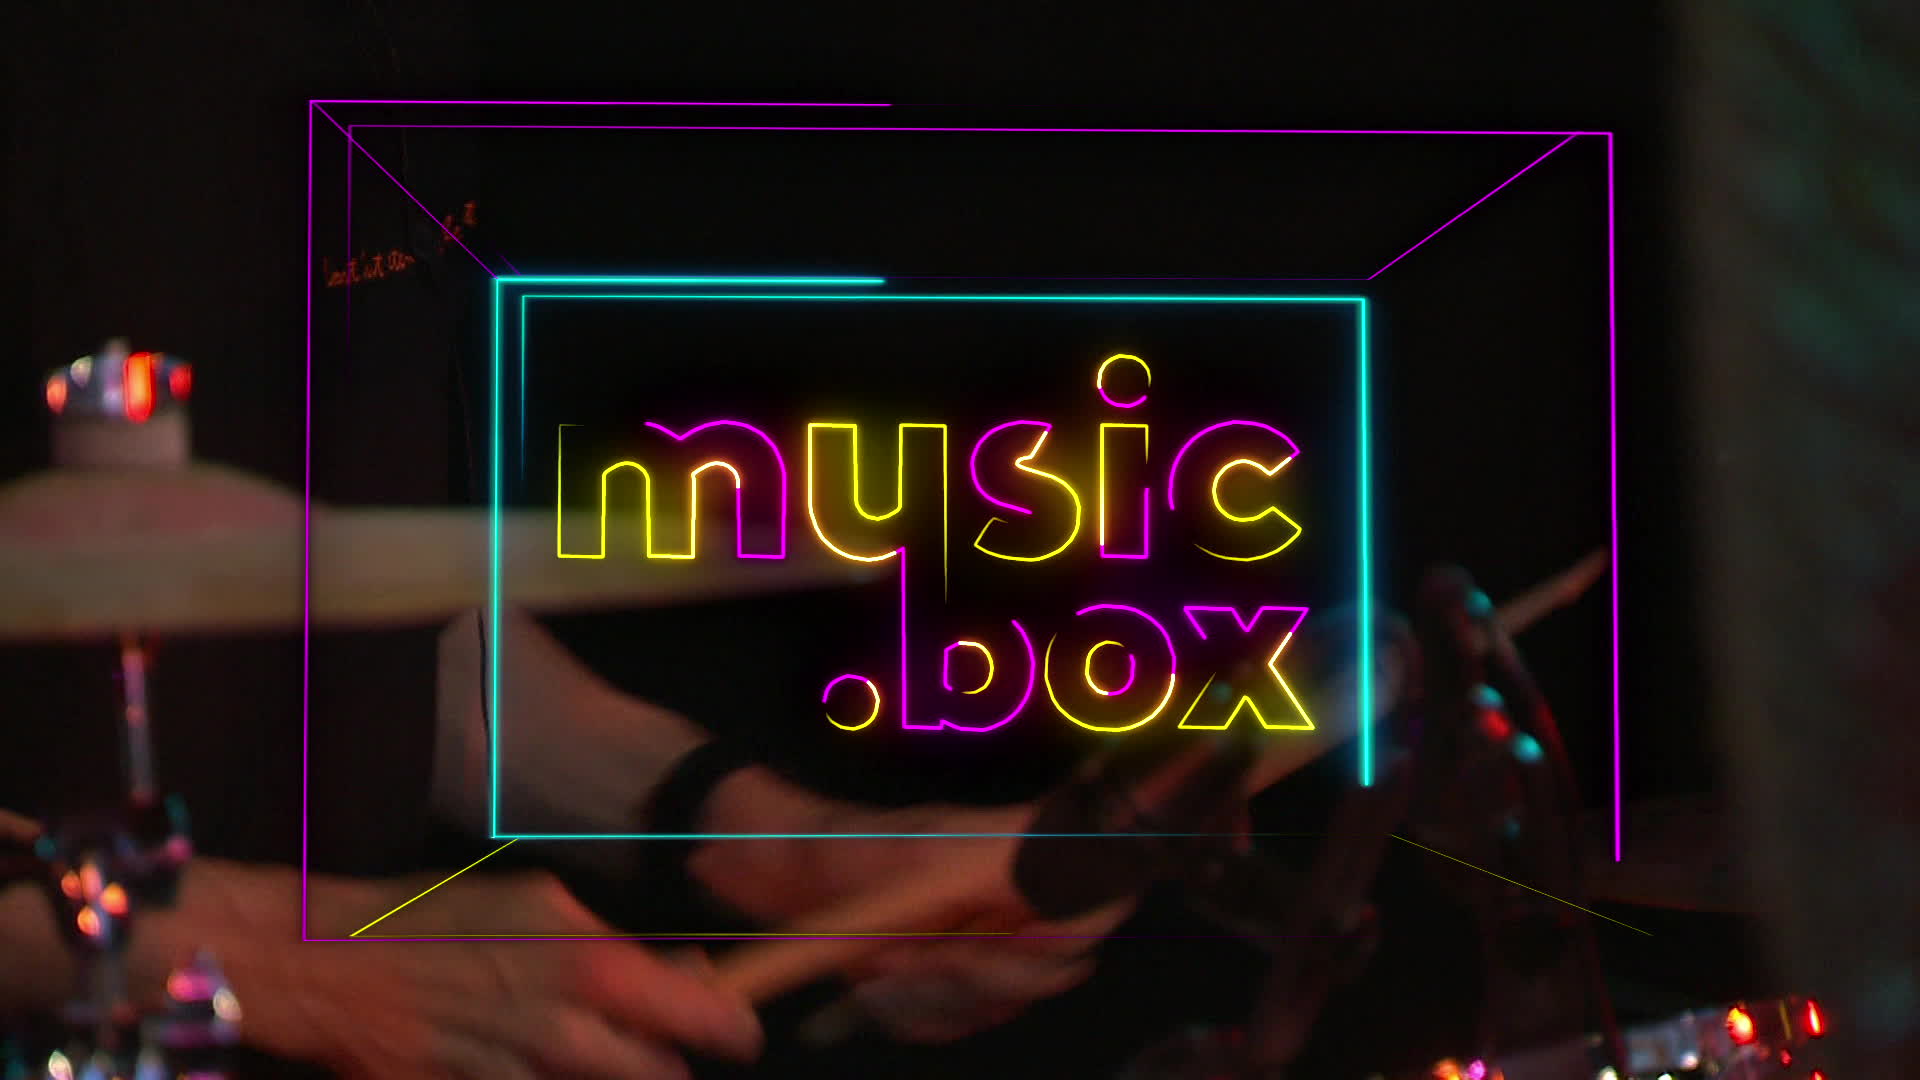 musicbox